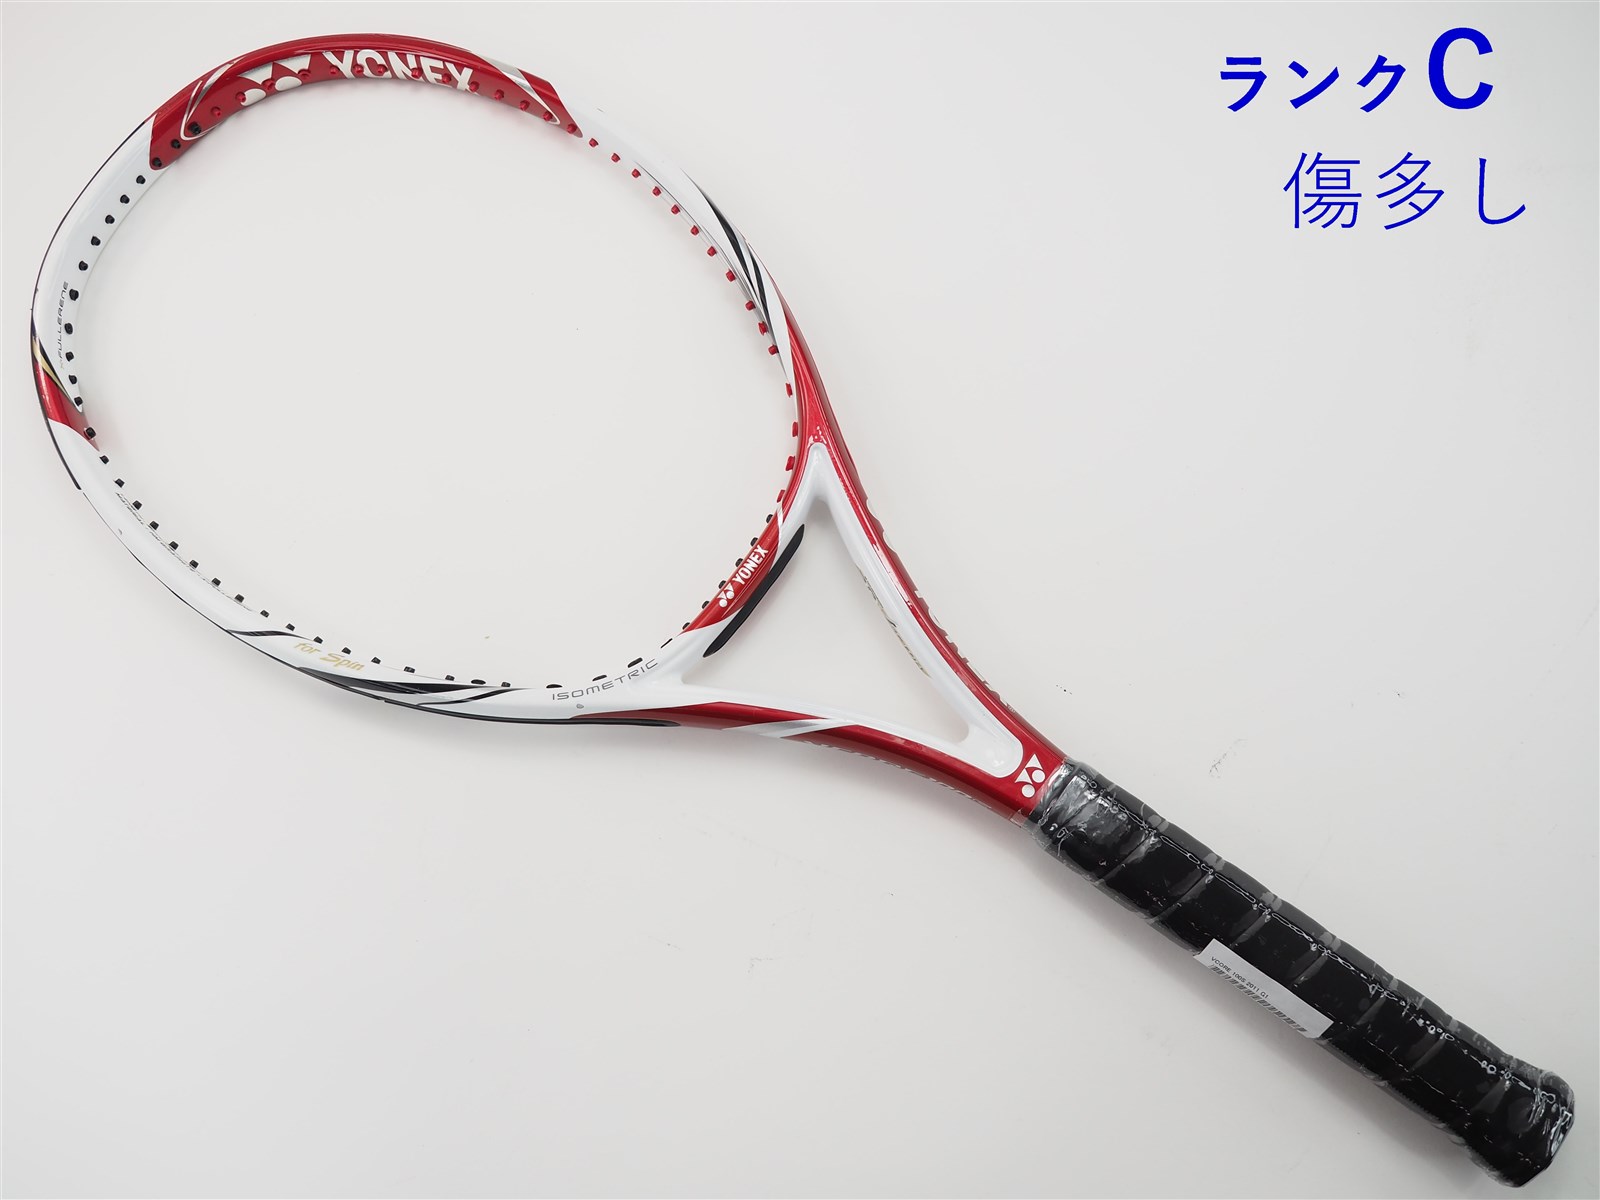 テニスラケット ヨネックス ブイコア ツアー ジー 2014年モデル (G2